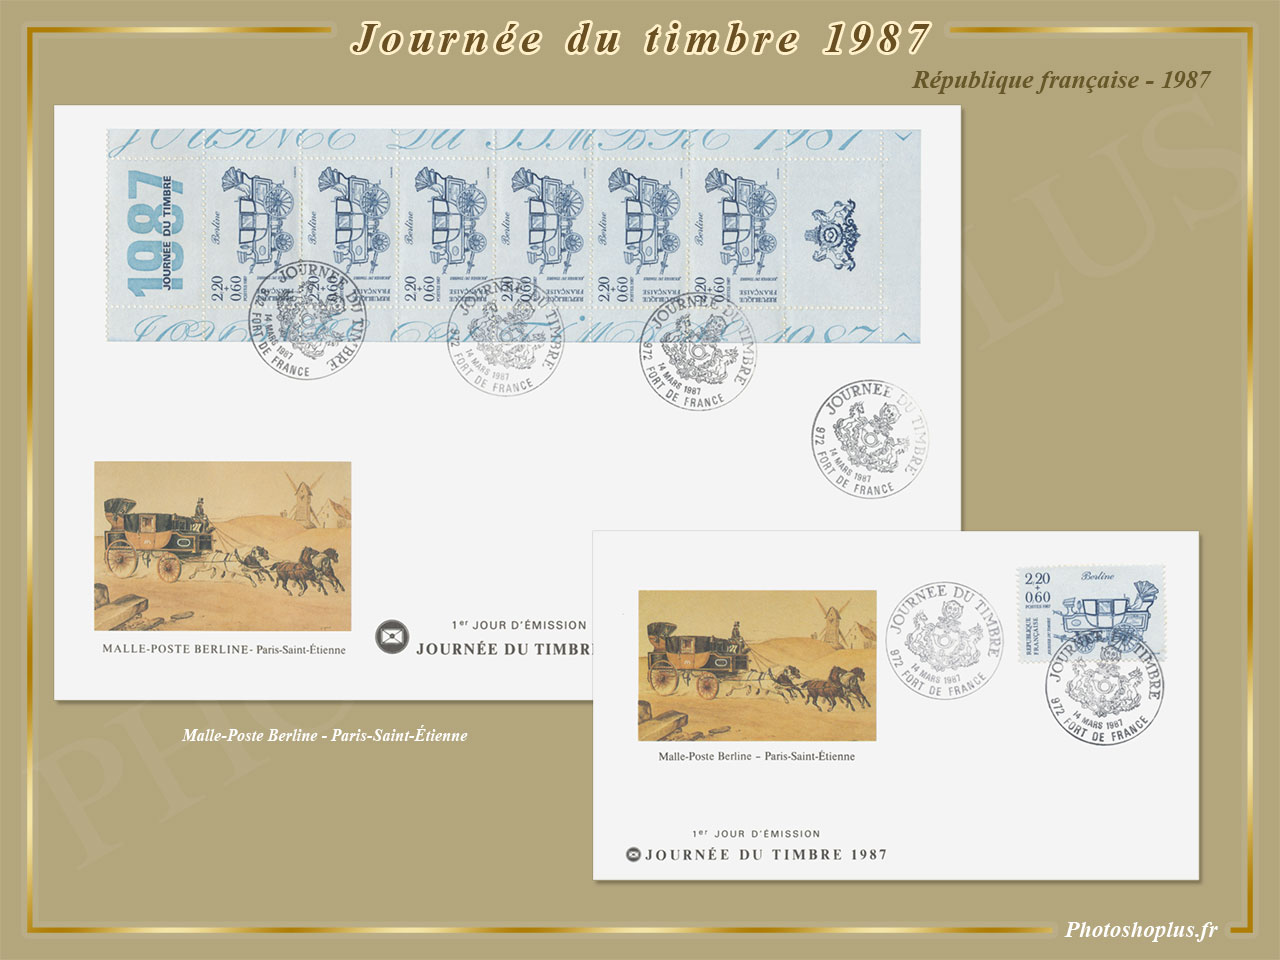 Journée du timbre 1987